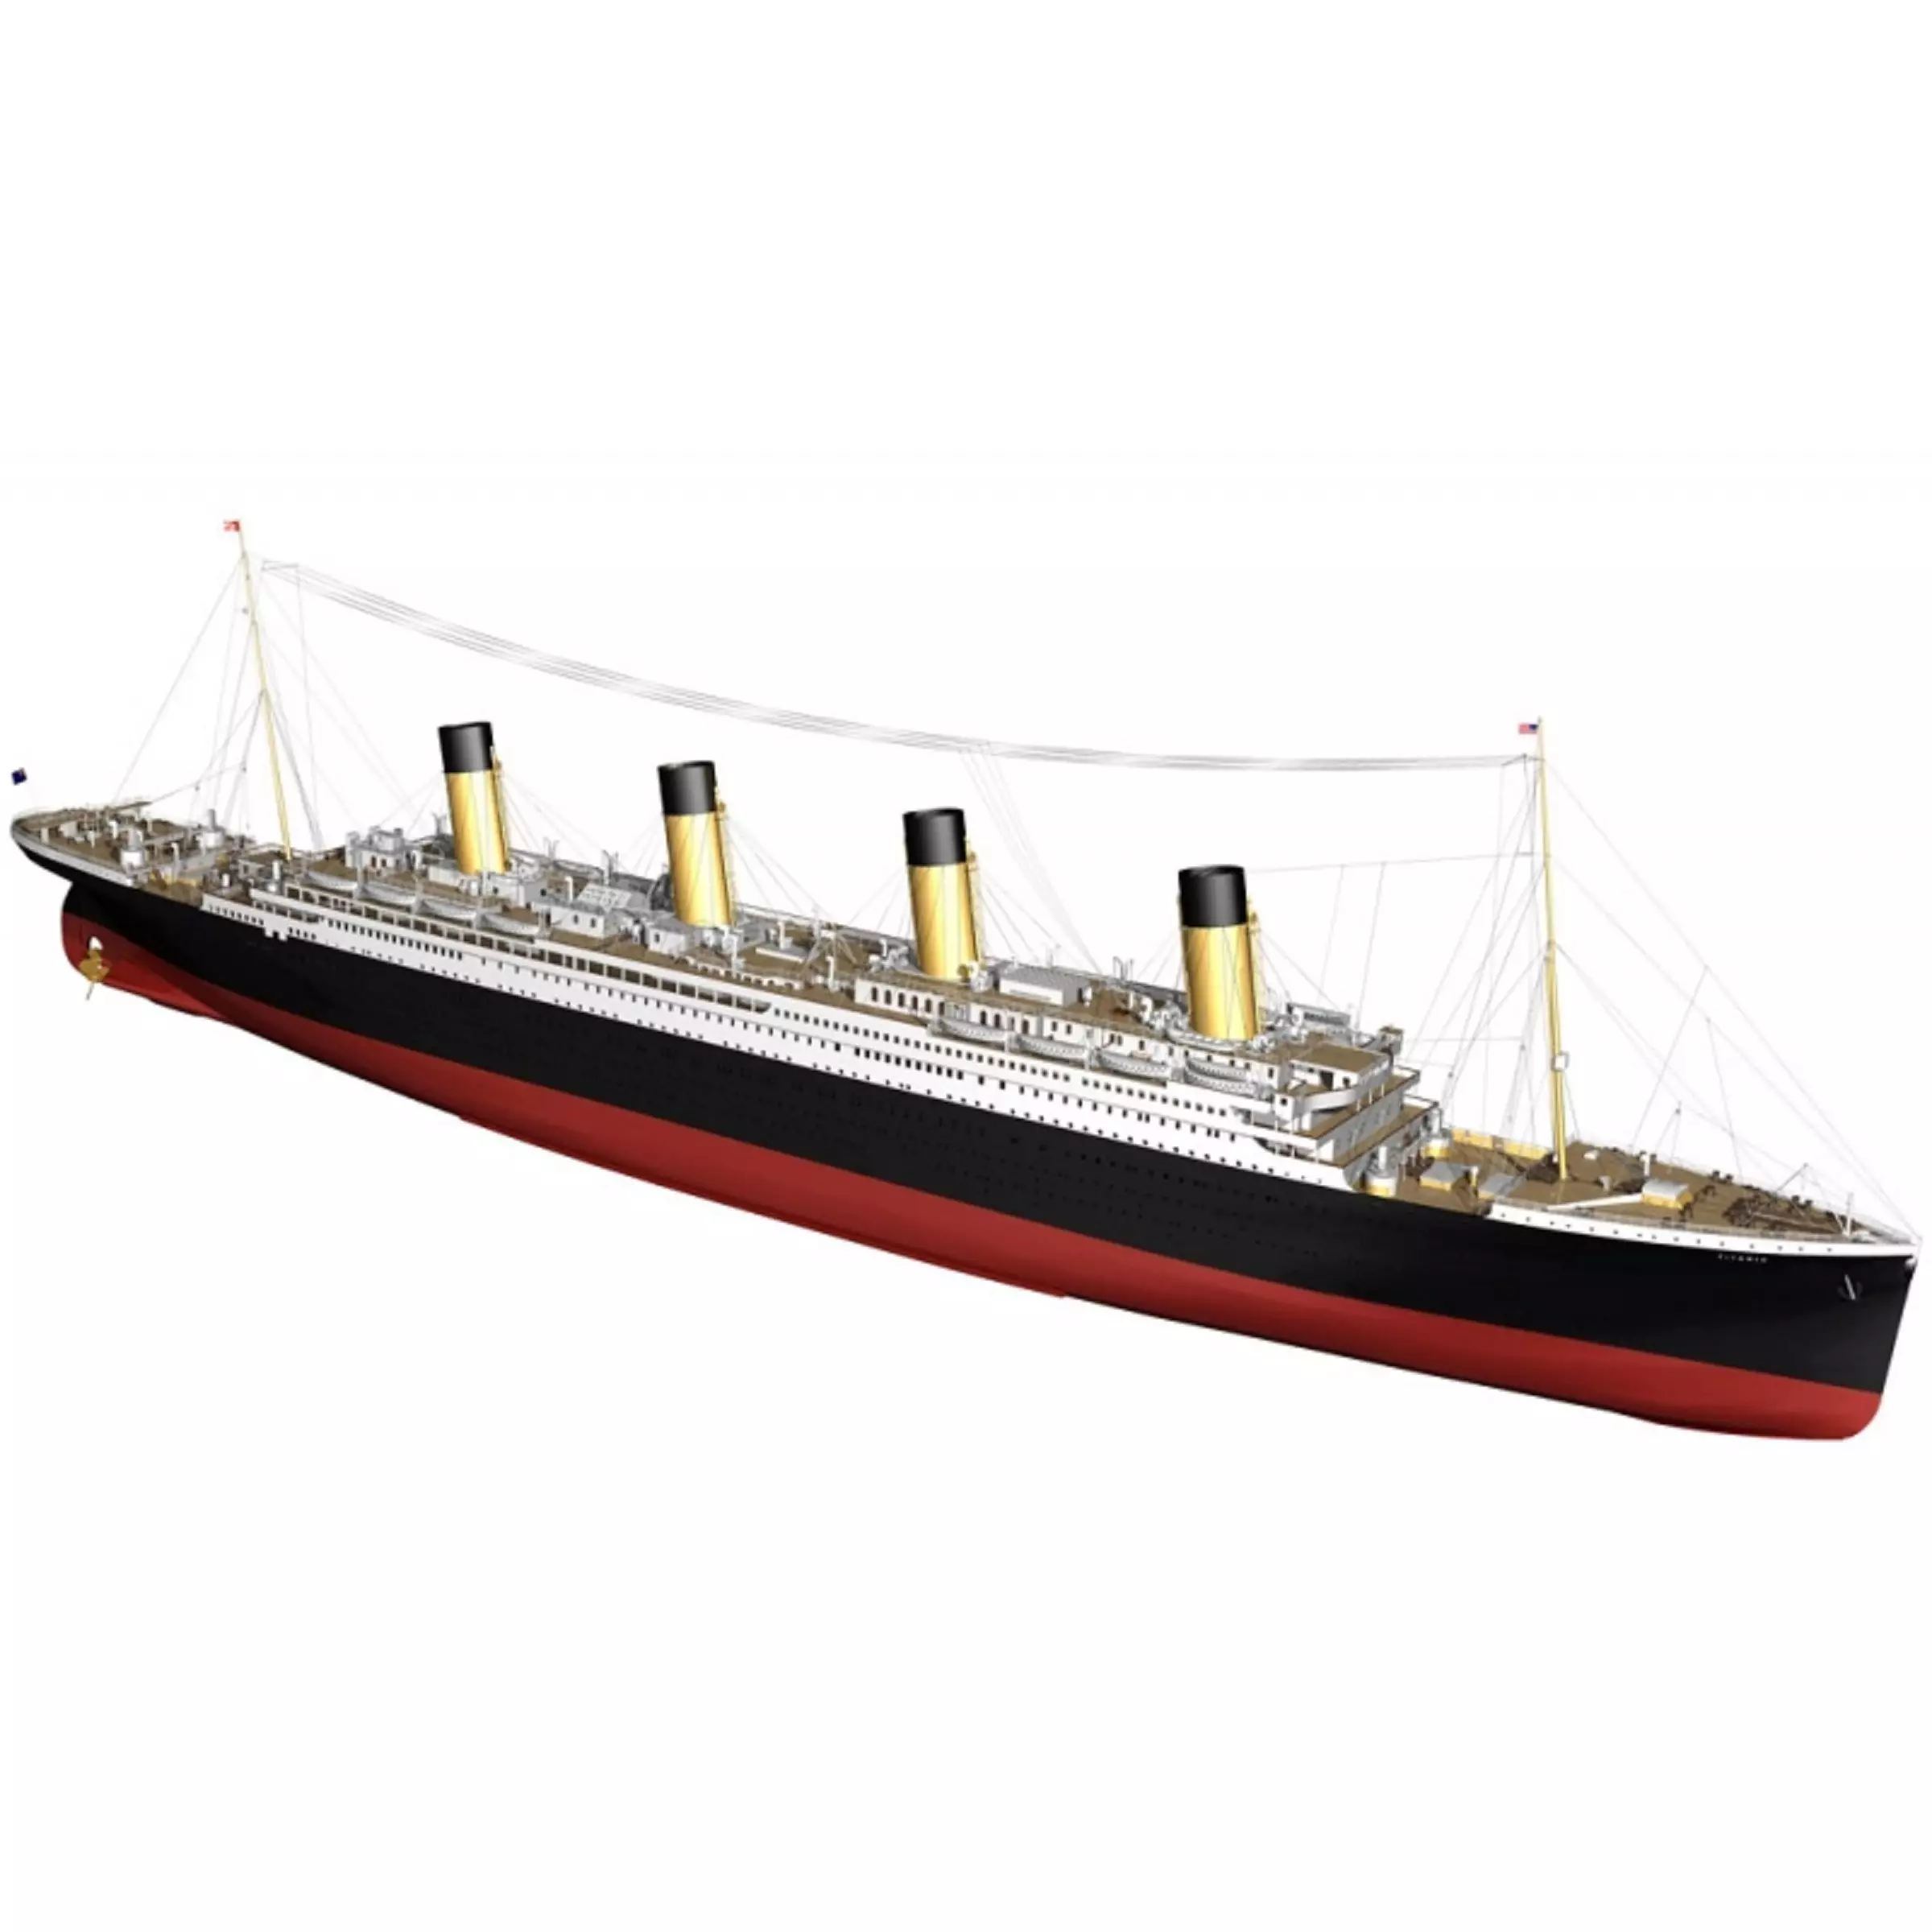 Puy-de-Dôme : il collectionne les objets sur le Titanic, dont une maquette  de 1 mètre 80 - Ceyrat (63122)